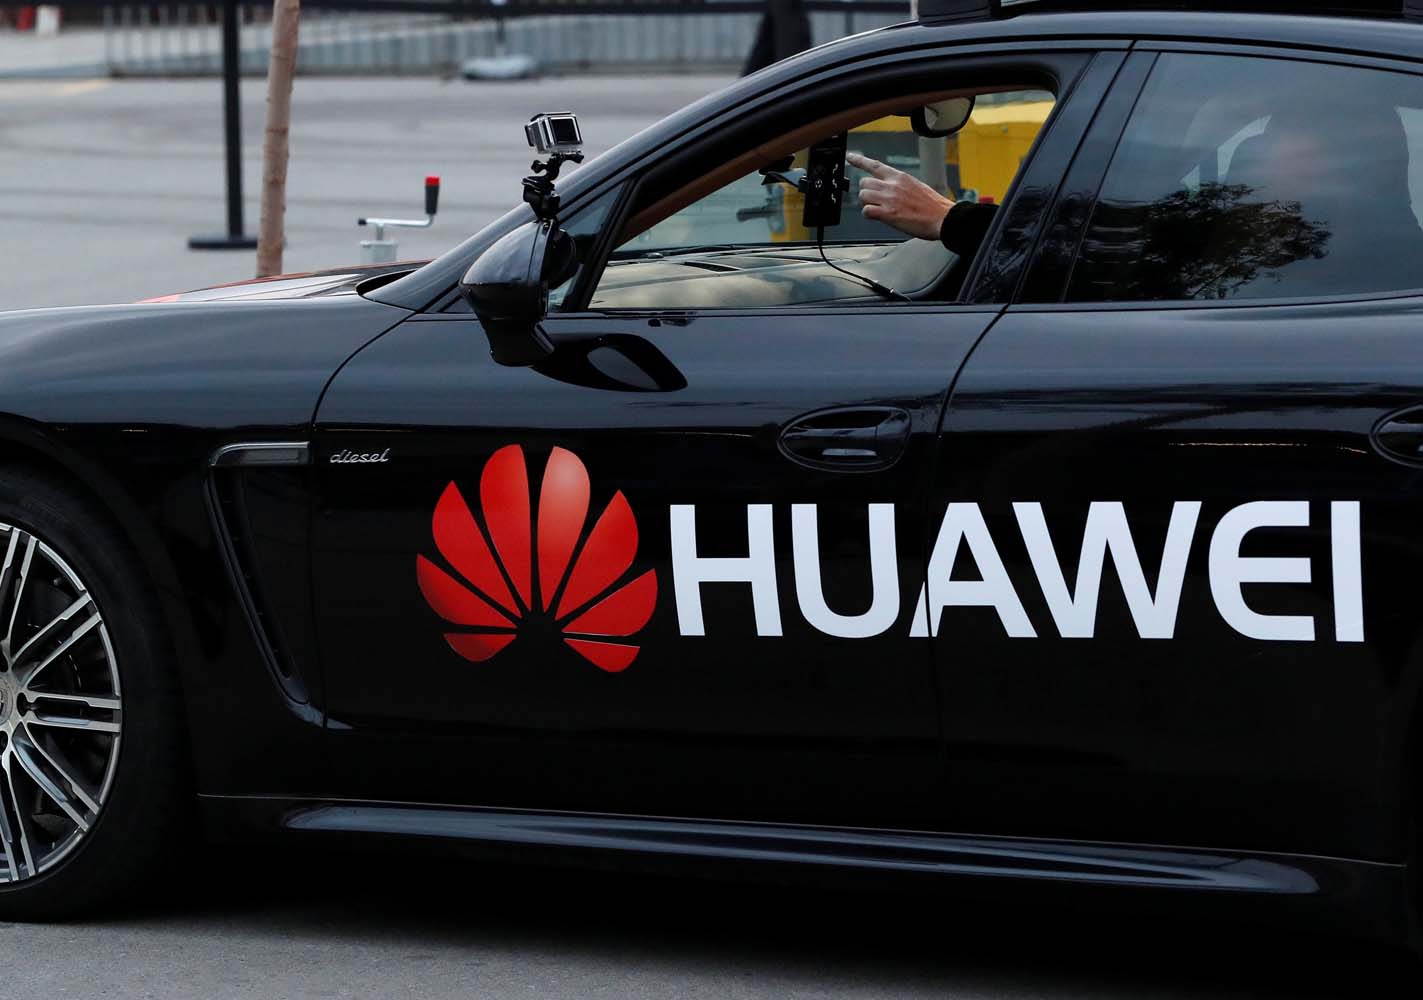 Prensa china acusa EEUU de querer acabar con supremacía tecnológica de Huawei